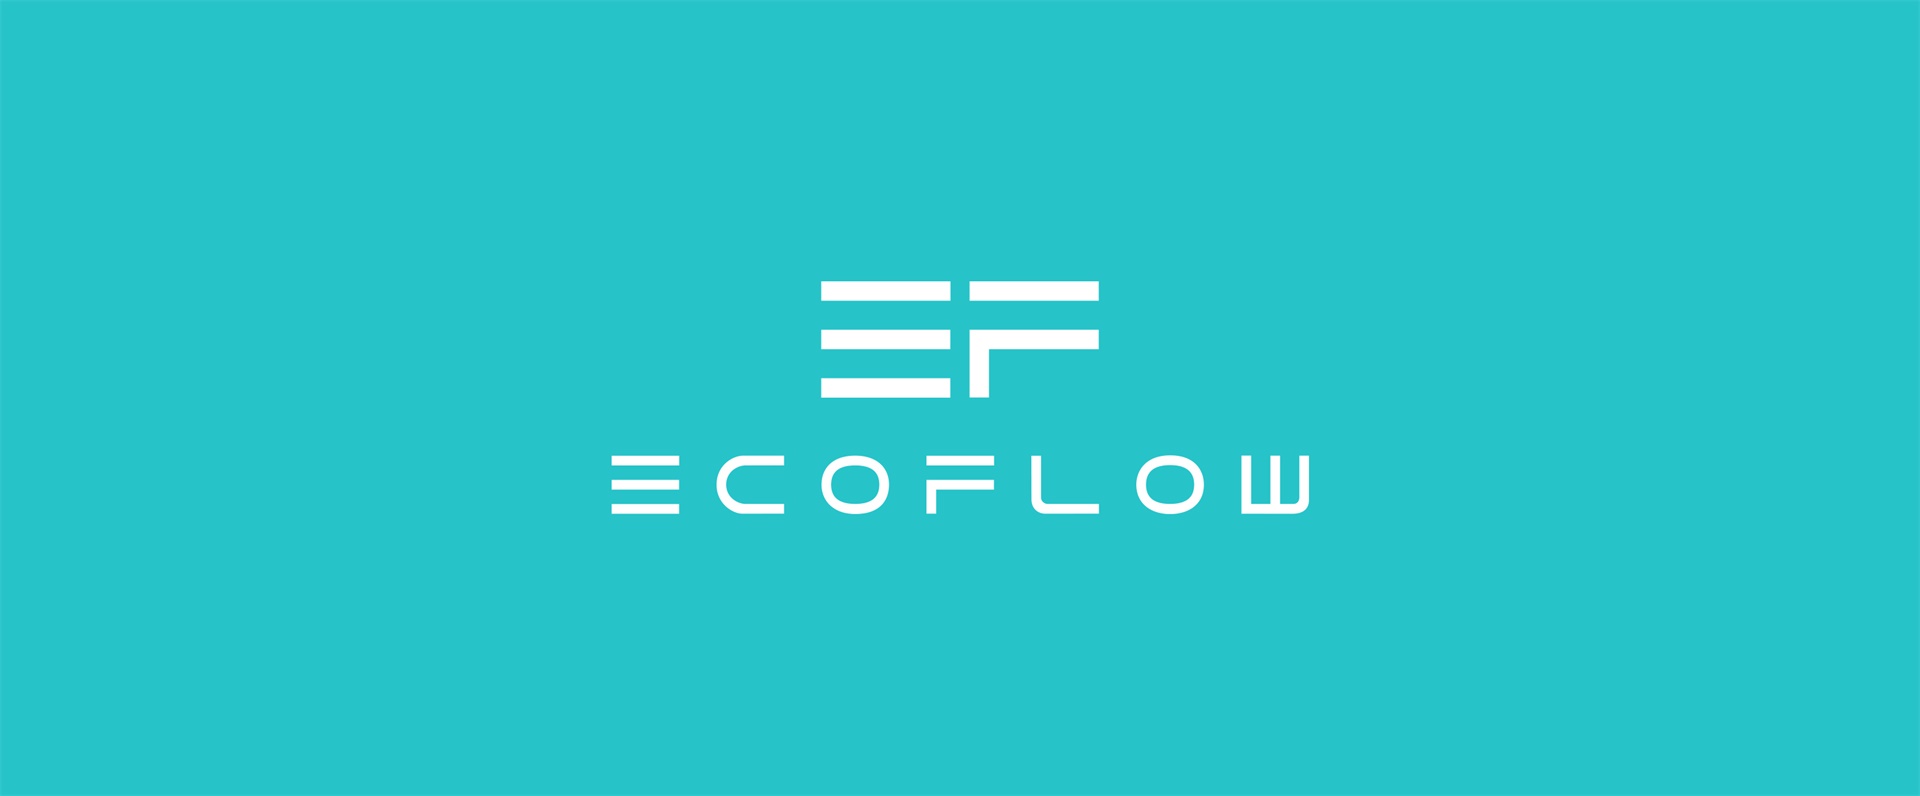 ECOFLOW_06.jpg